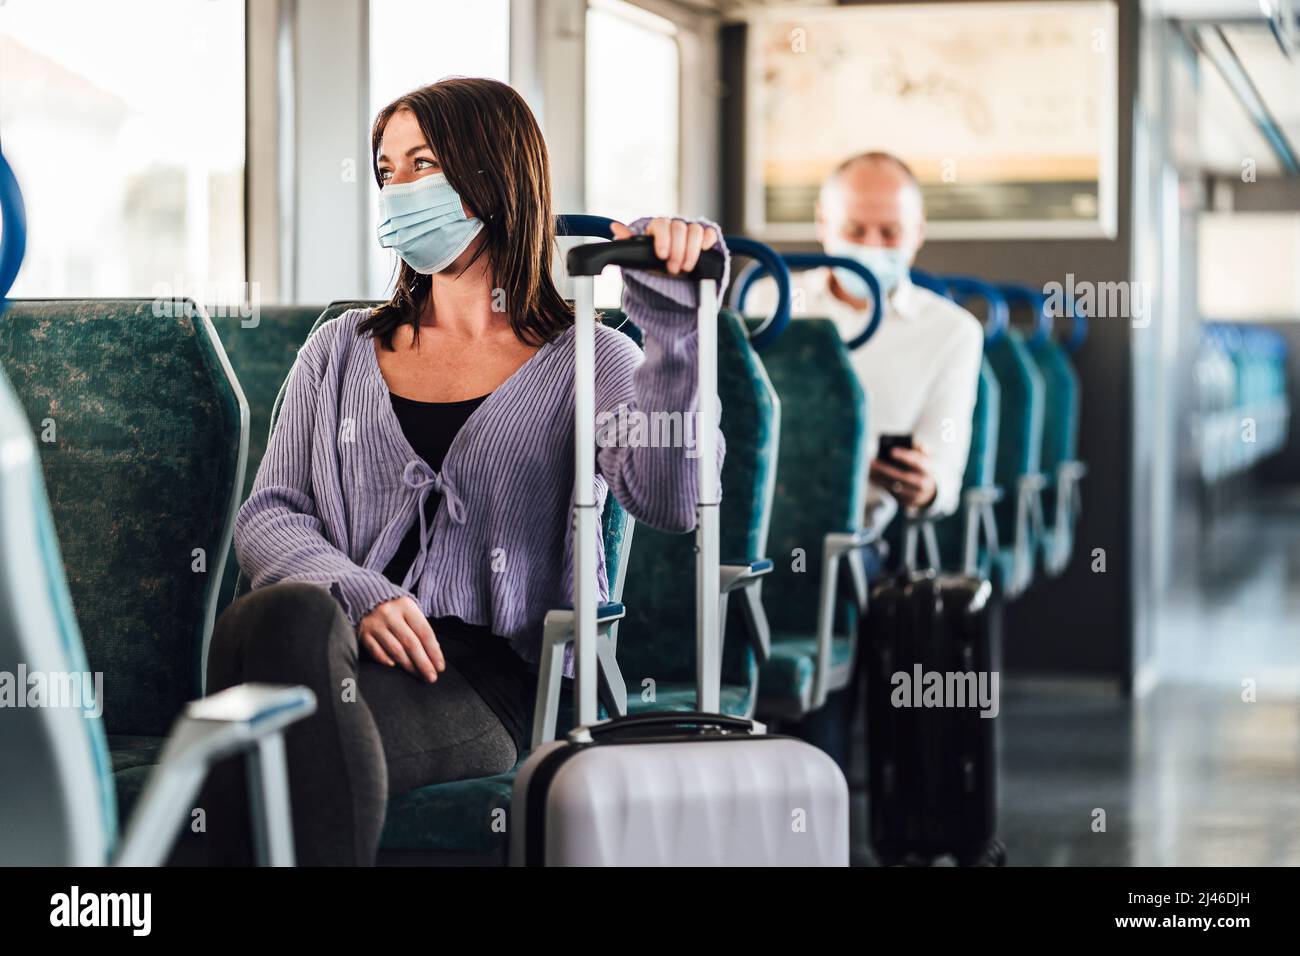 Ernsthafte Passagiere in Schutzmasken während ihrer Zugfahrt Stockfoto